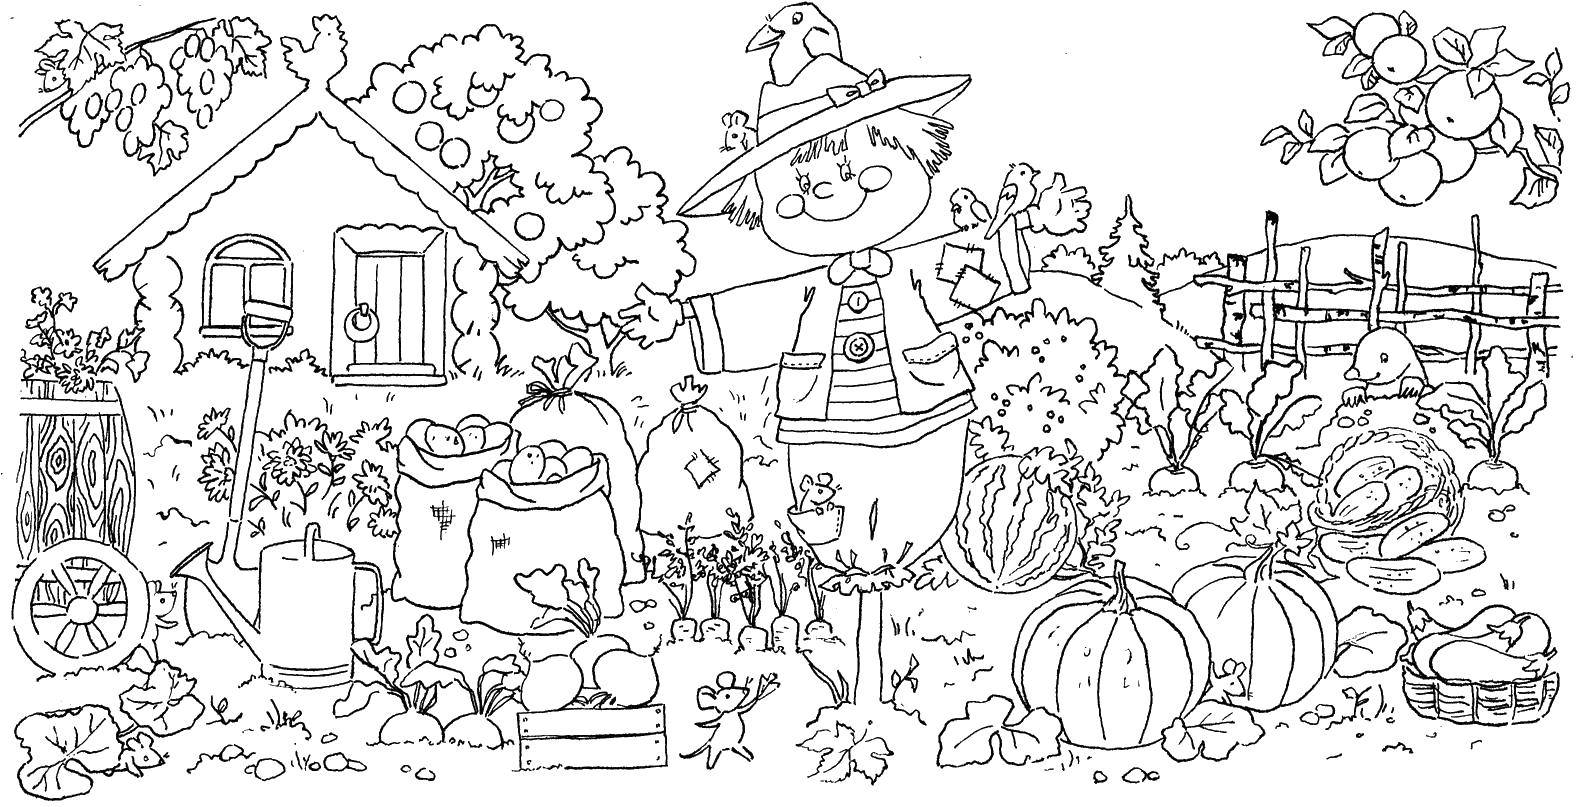 Coloring Autumn Scarecrow in the garden. Category Nature. Tags:  Nature, garden, Scarecrow, vegetables, house.